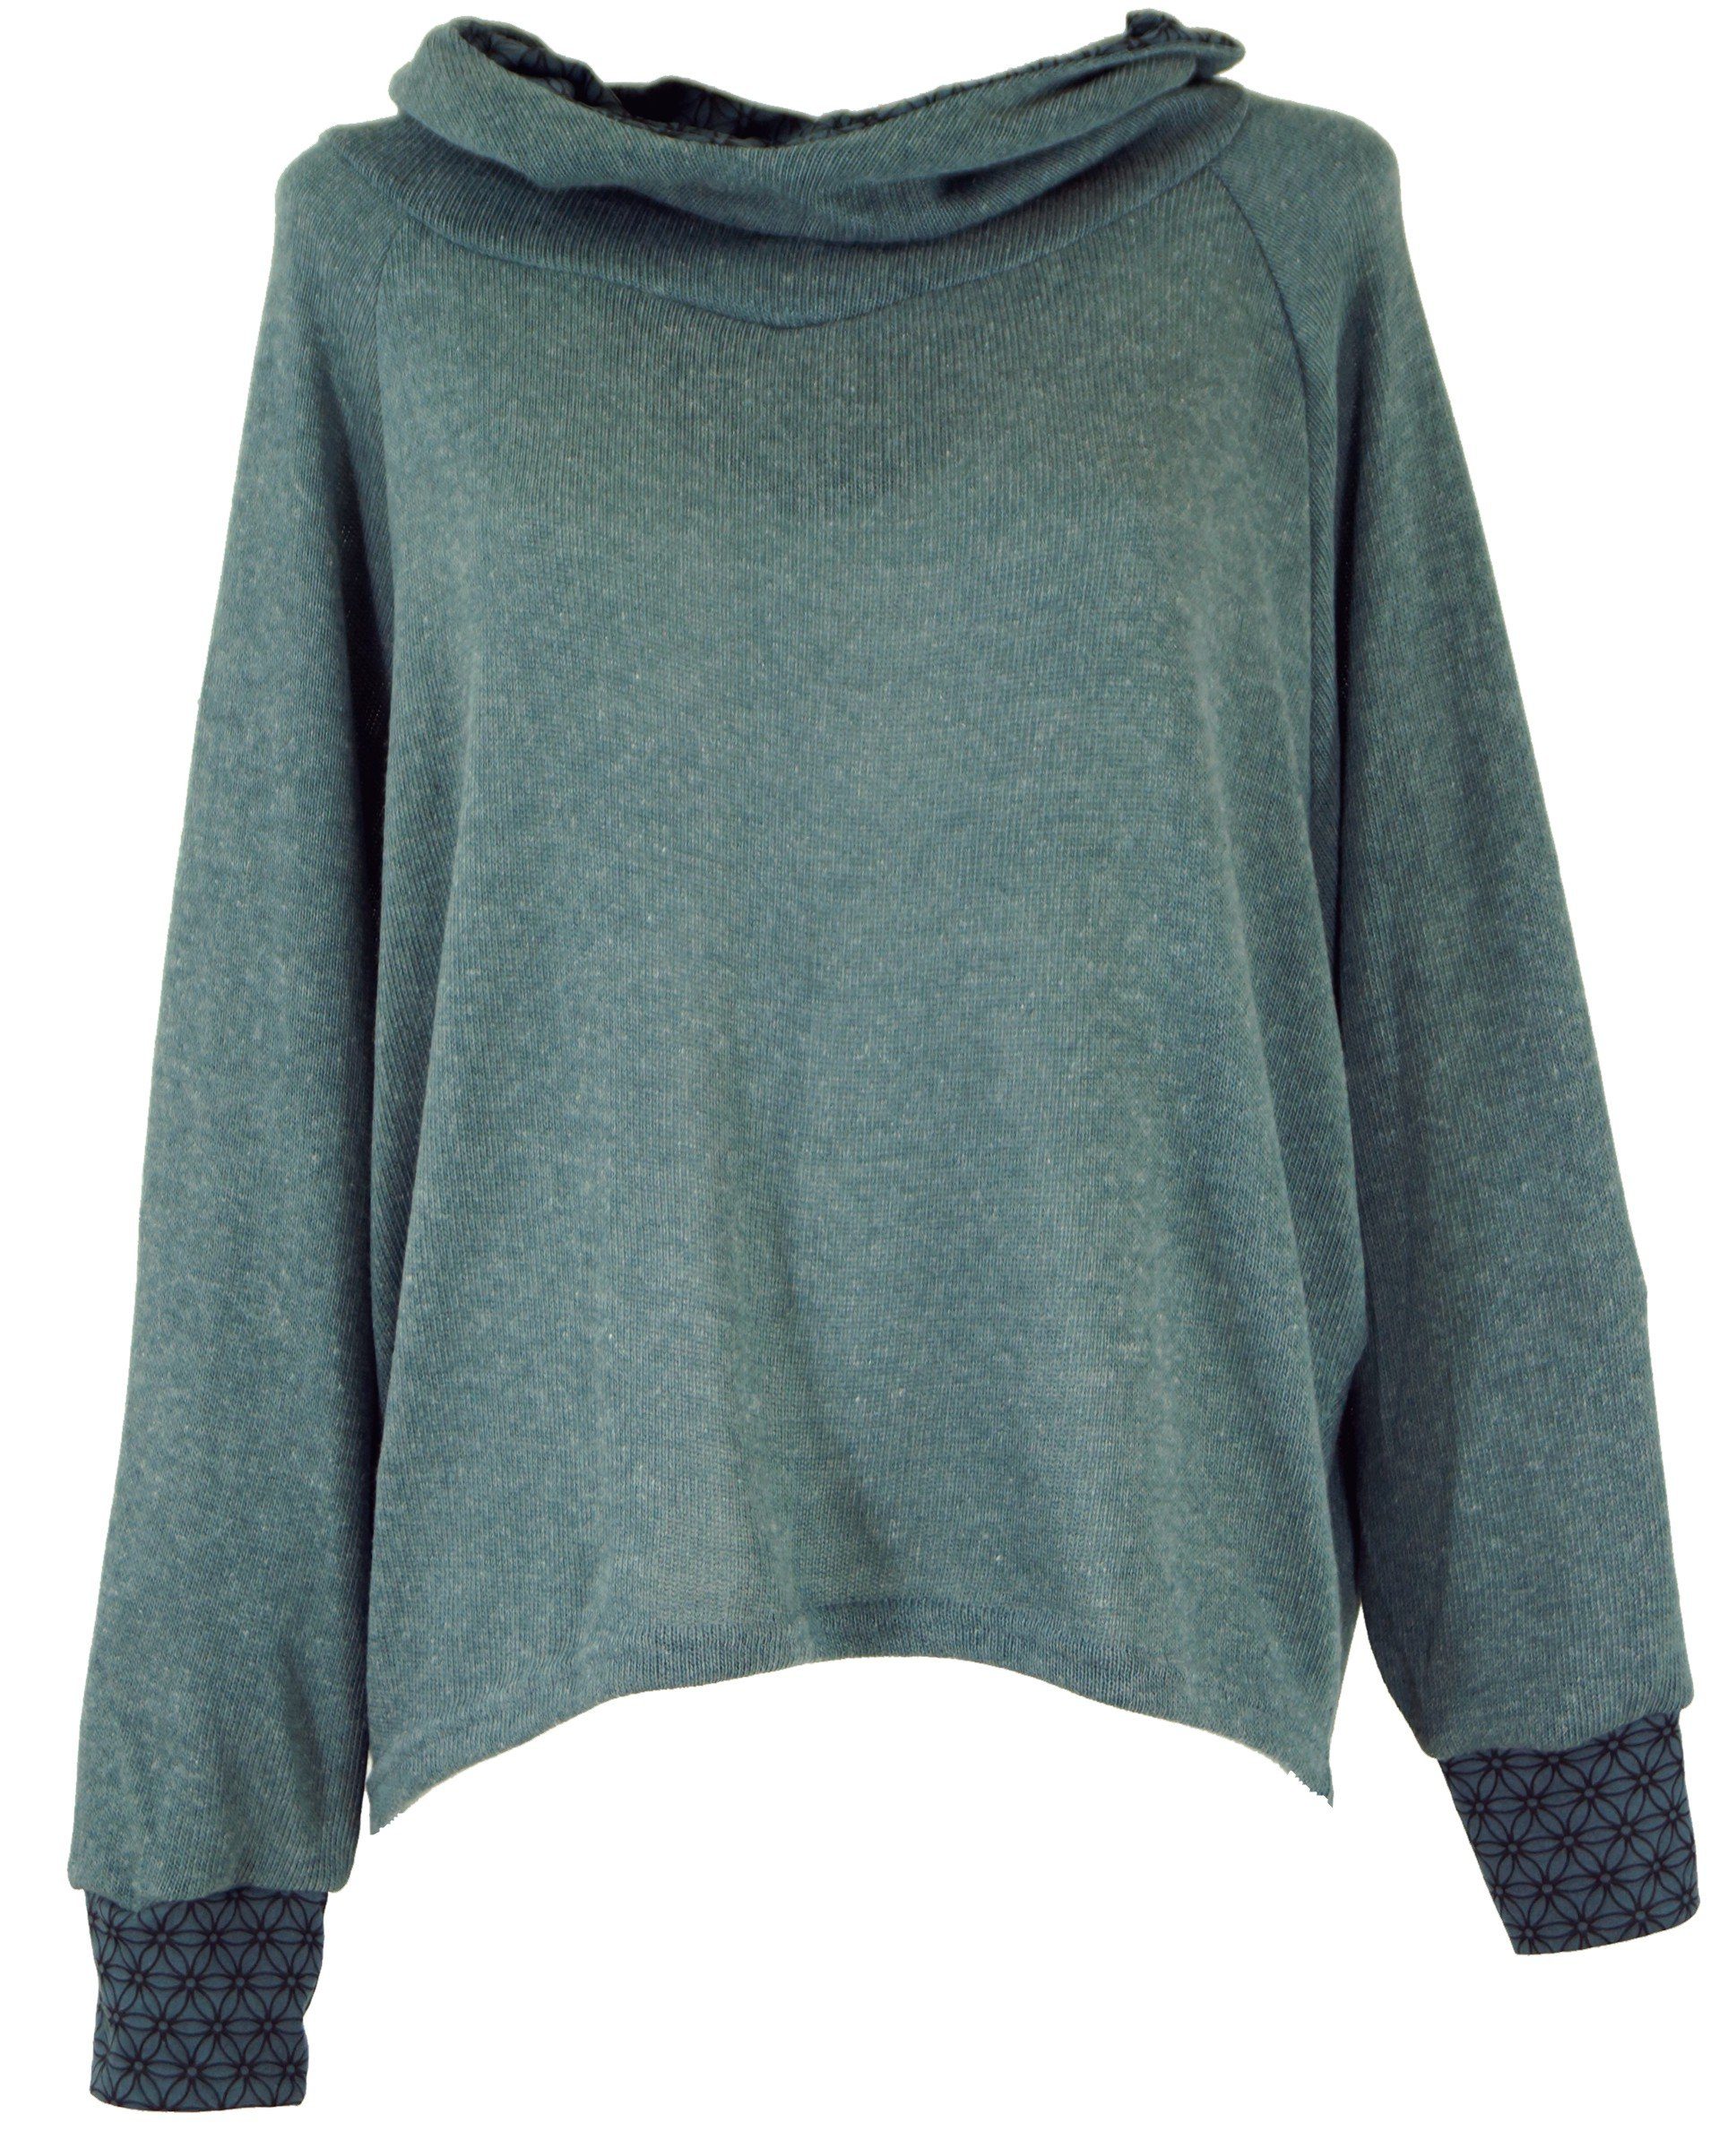 Pullover, Guru-Shop Kapuzenpullover Longsleeve -.. taubenblau Hoody, Bekleidung Sweatshirt, alternative